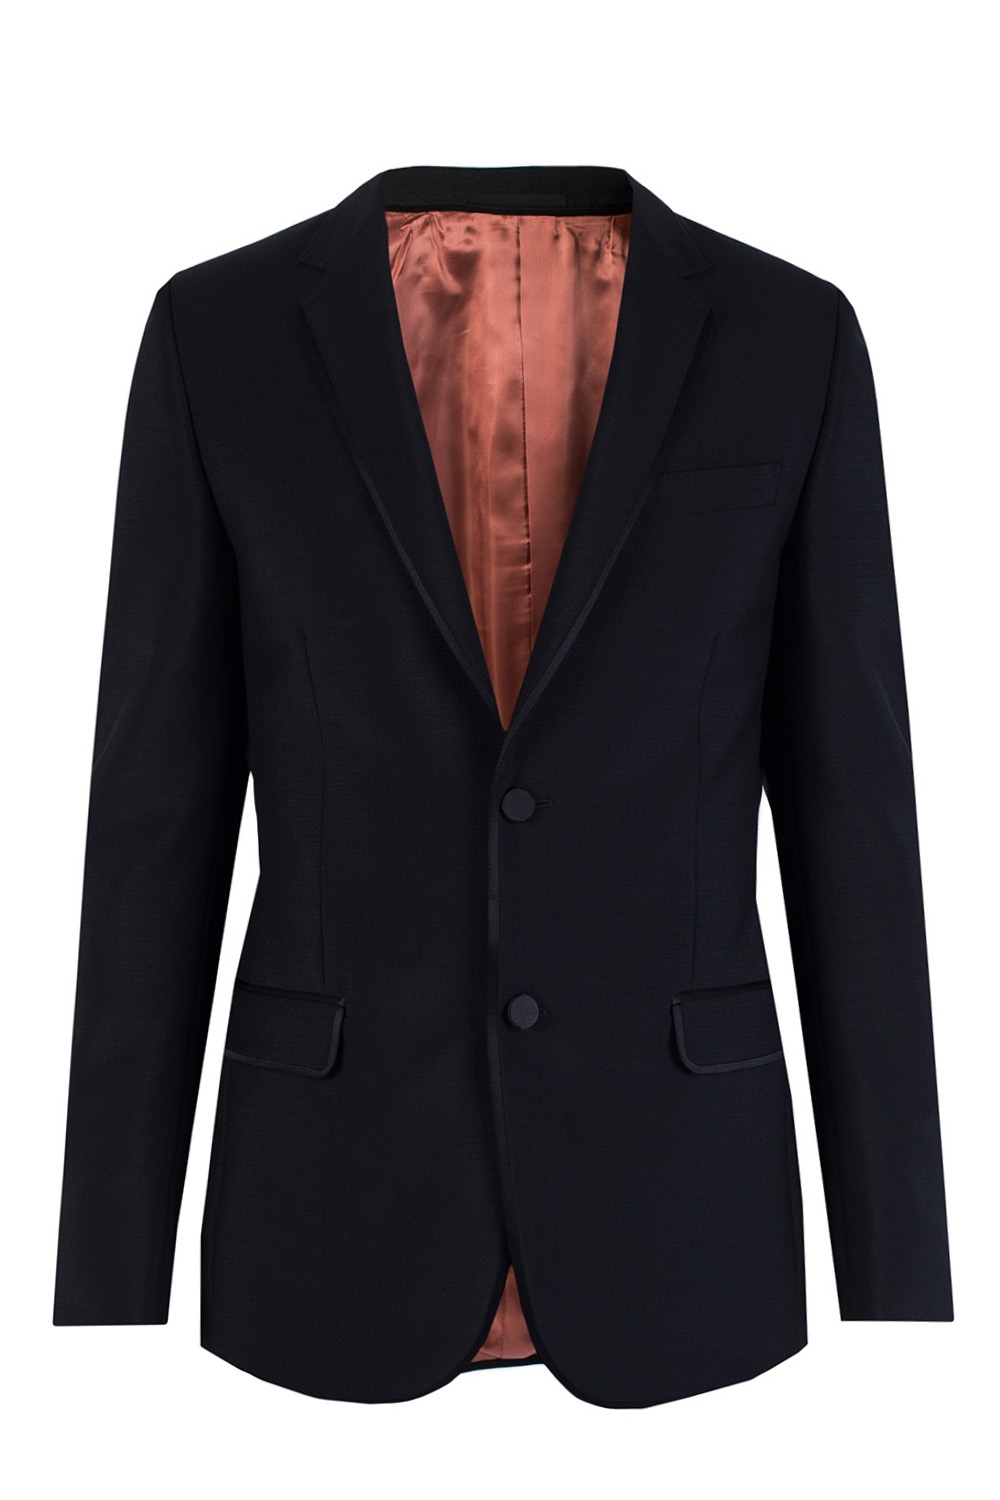 Mohair suit Gucci - Vitkac